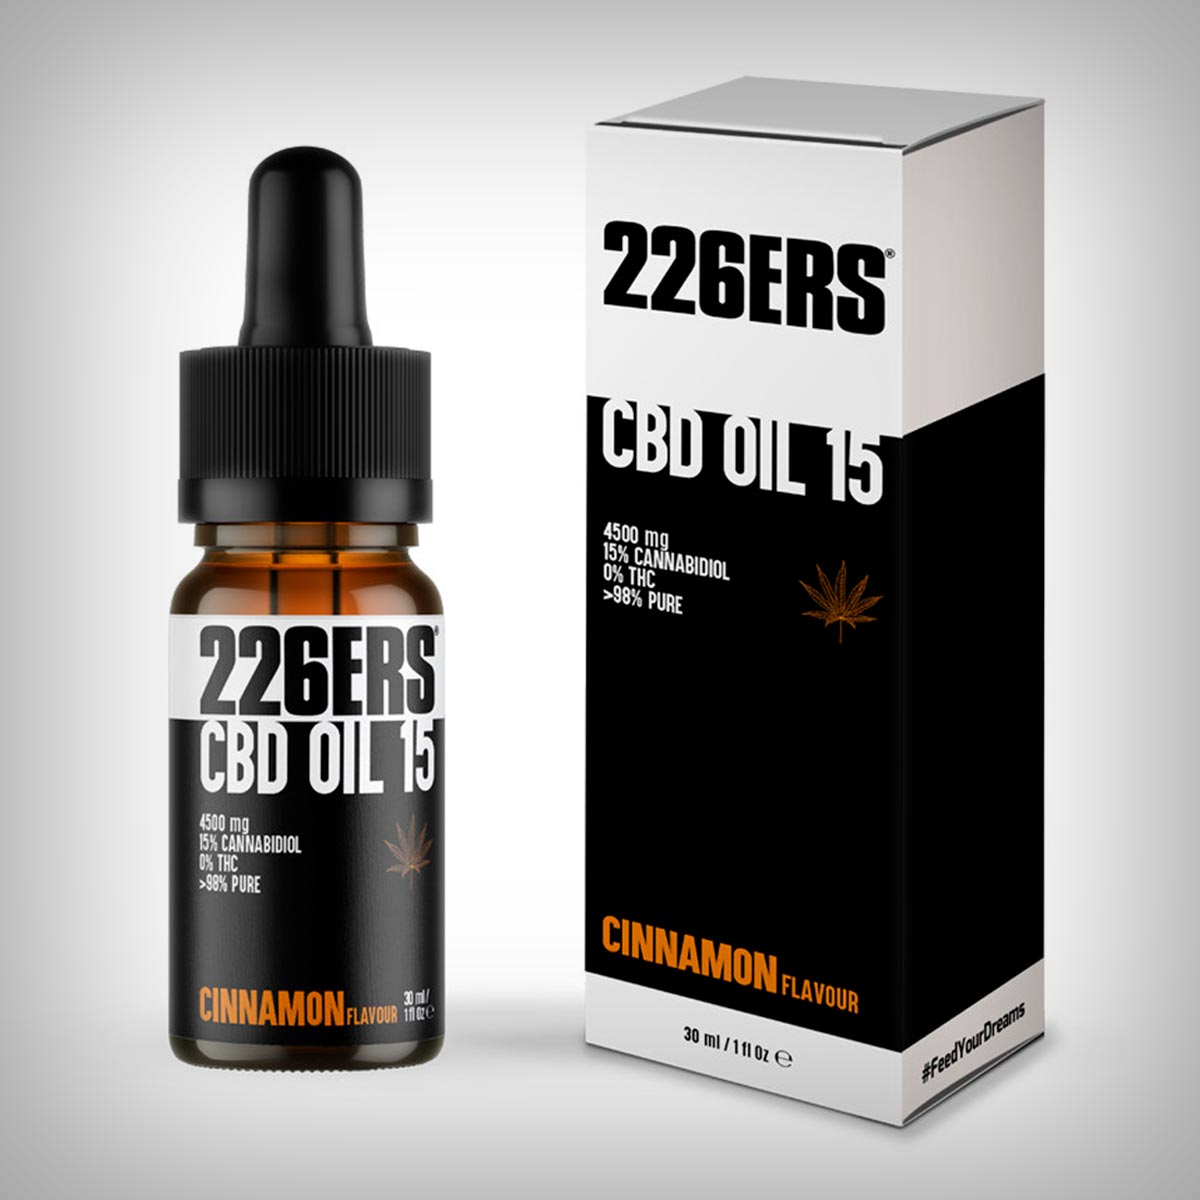 226ERS presenta el CBD Oil 15, un aceite de cáñamo sin THC con propiedades analgésicas, antiinflamatorias y ansiolíticas